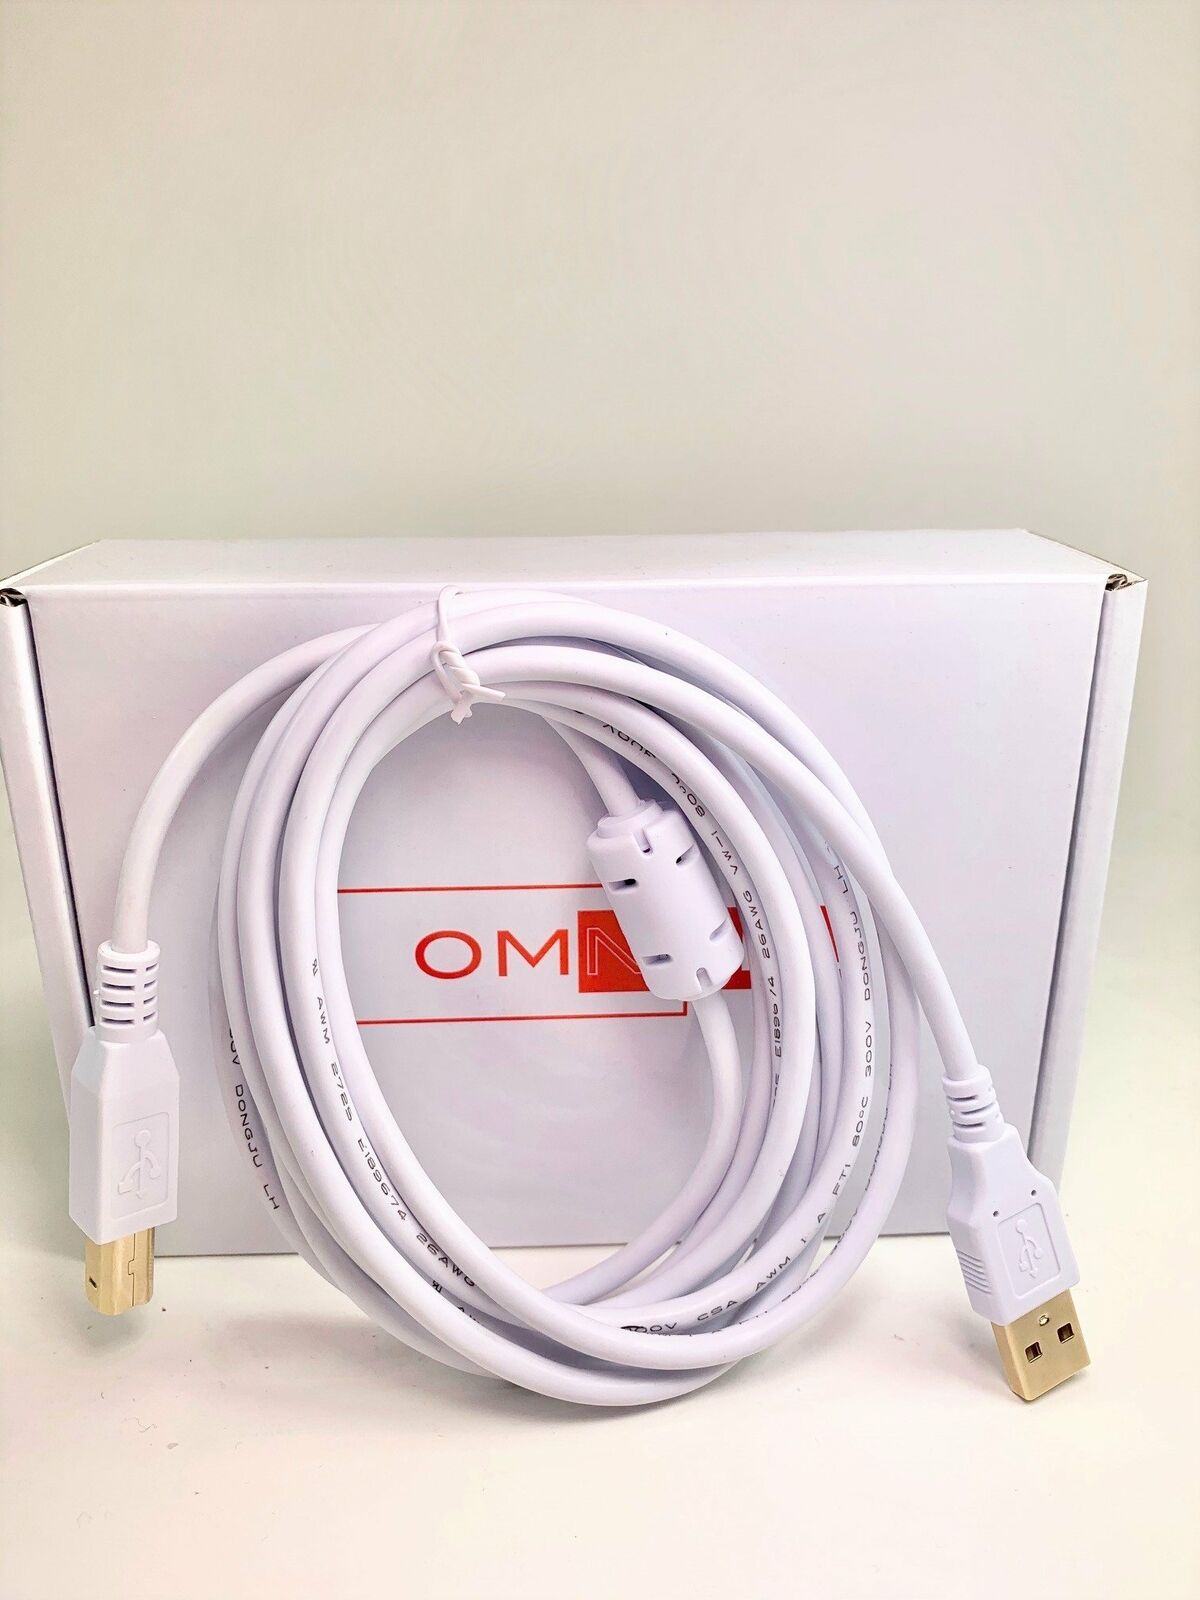 品質一番の White 8FT High Speed USB 2.0 Cable for PRO 200 COLOR LASERJET M276NW MFP HP 数量限定アウトレット最安価格